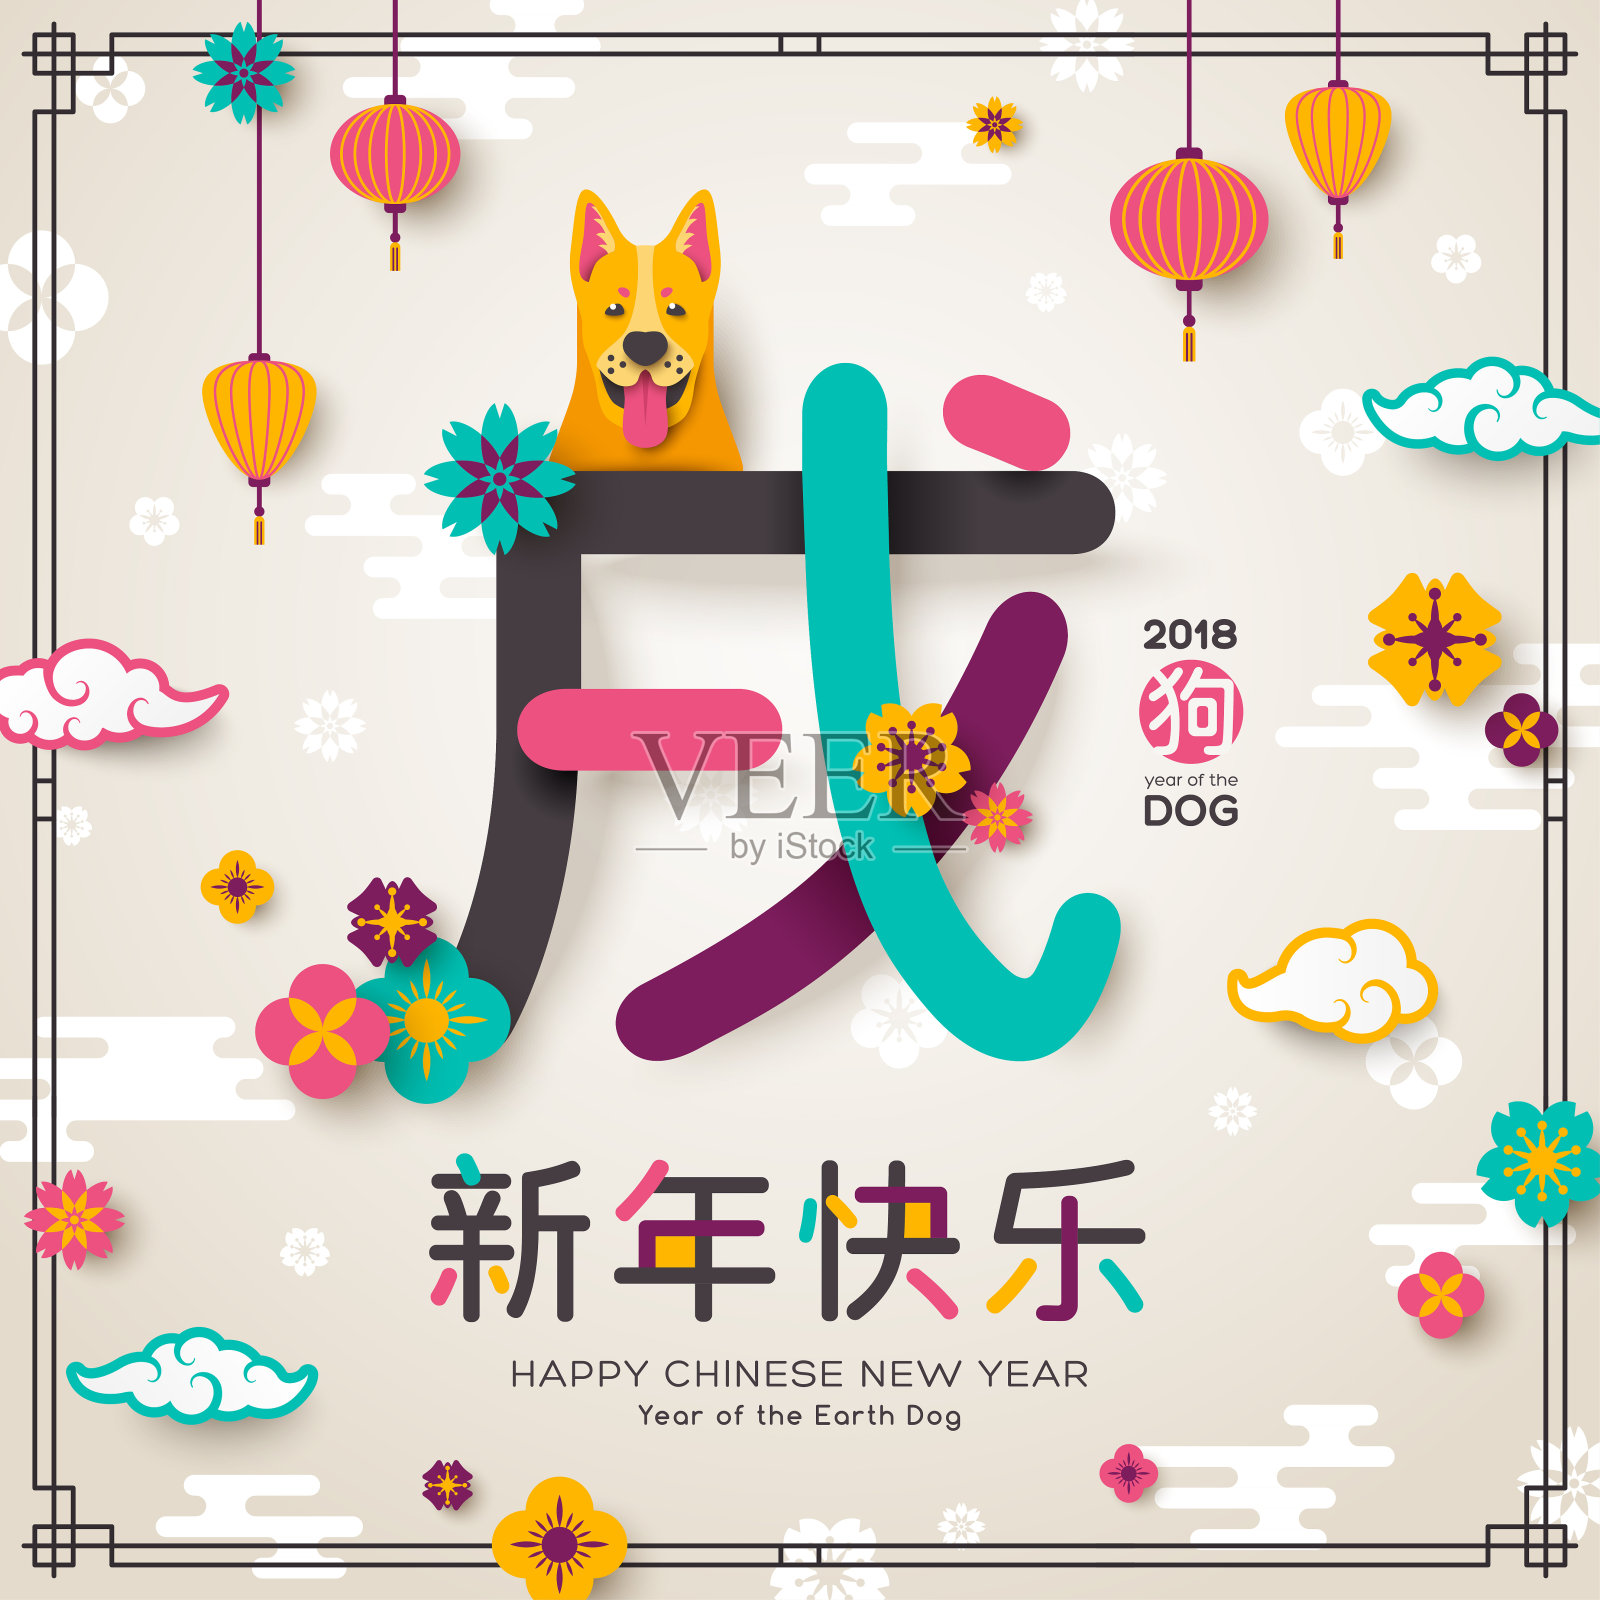 2018年中国象形土狗贺年卡设计模板素材